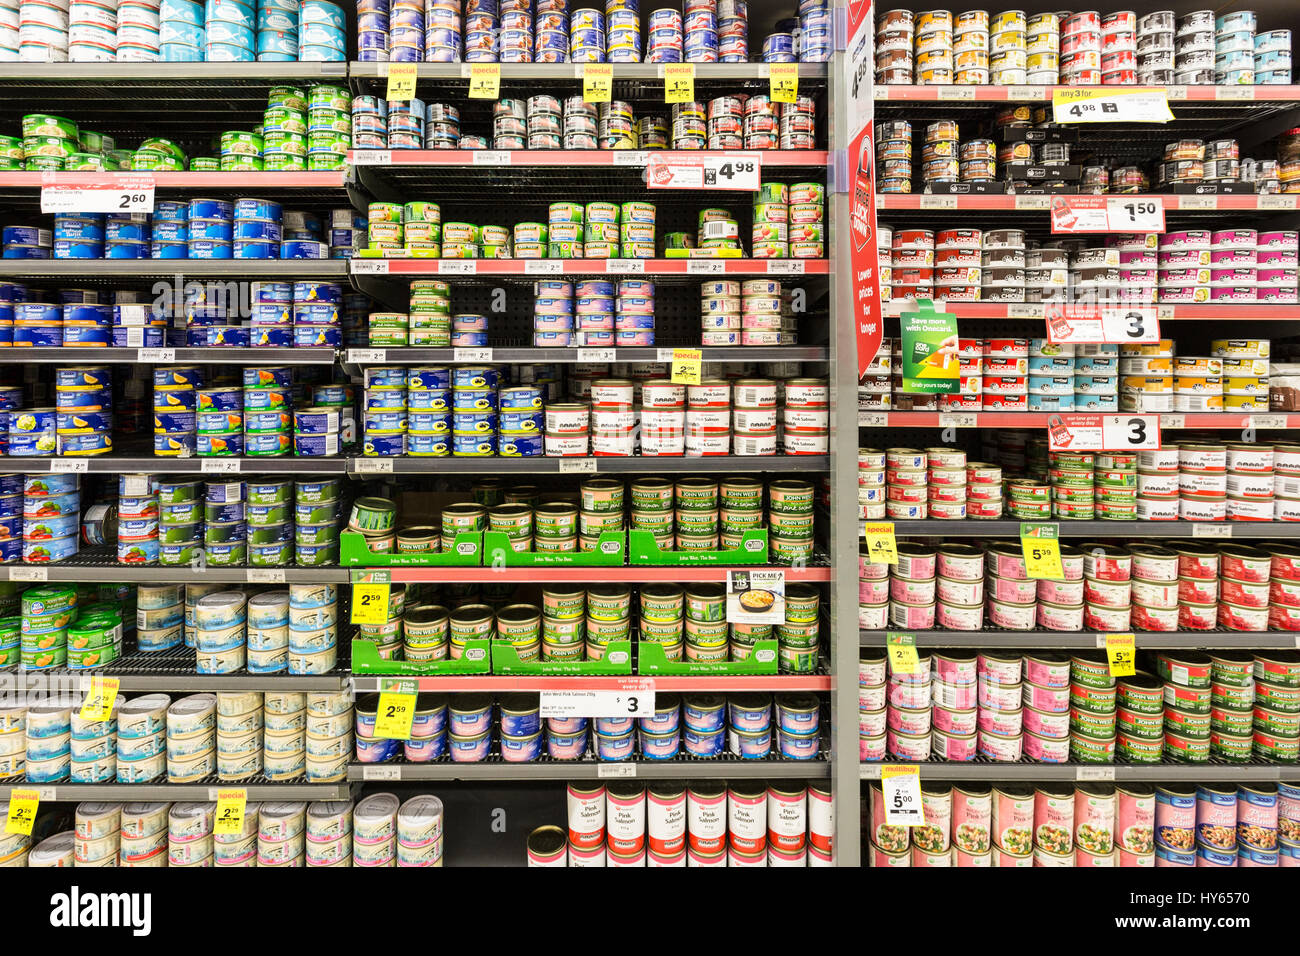 AUCKLAND, NUOVA ZELANDA - 22 febbraio 2017: lattine di tonno, salmone e altri tipi di pesce visualizzati in un supermercato con prezzi in dollaro neozelandese. Foto Stock